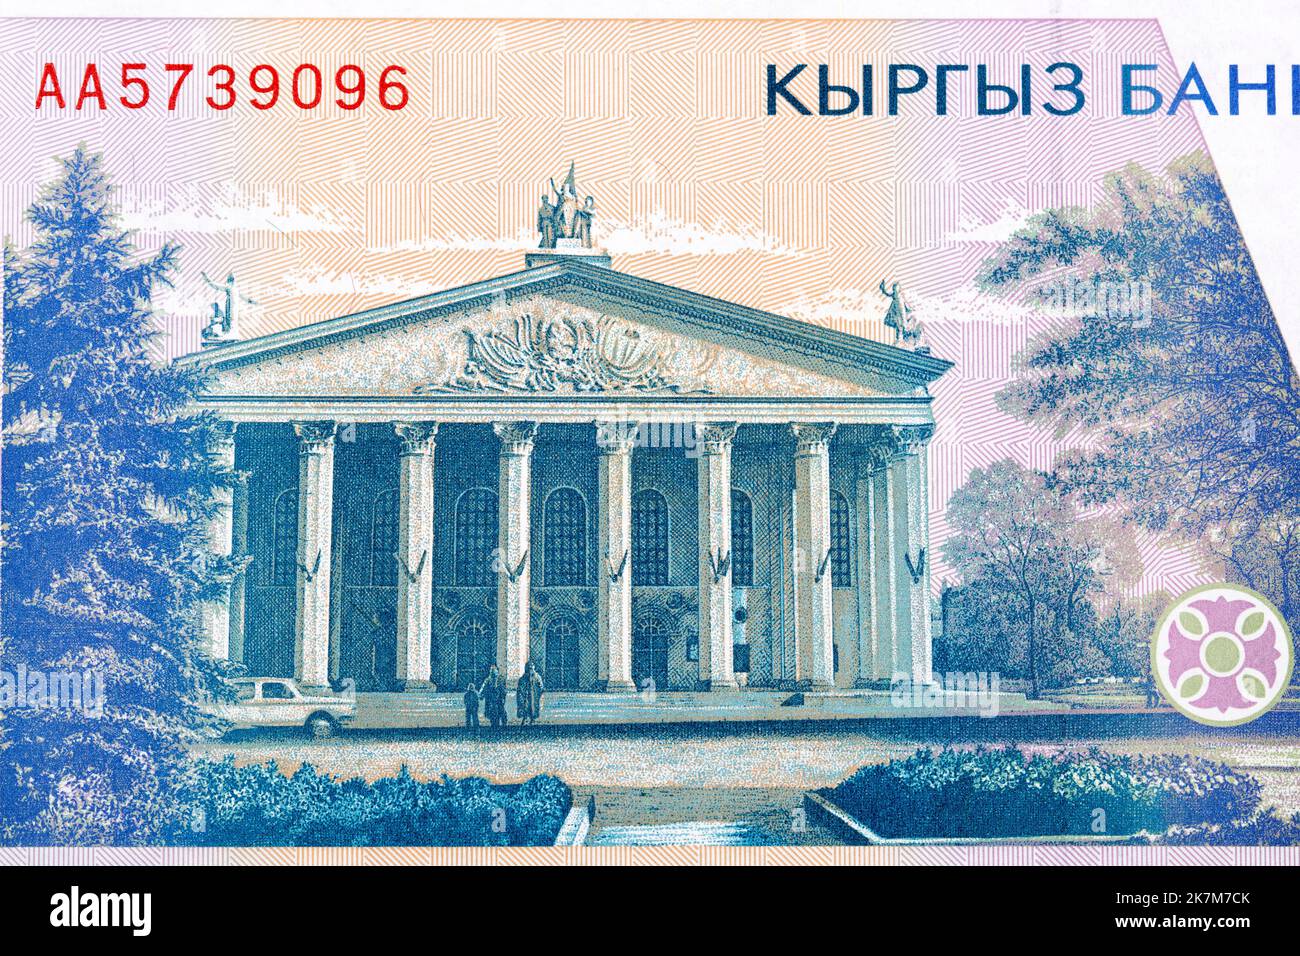 Opéra national kirghize de l'argent - Som Banque D'Images